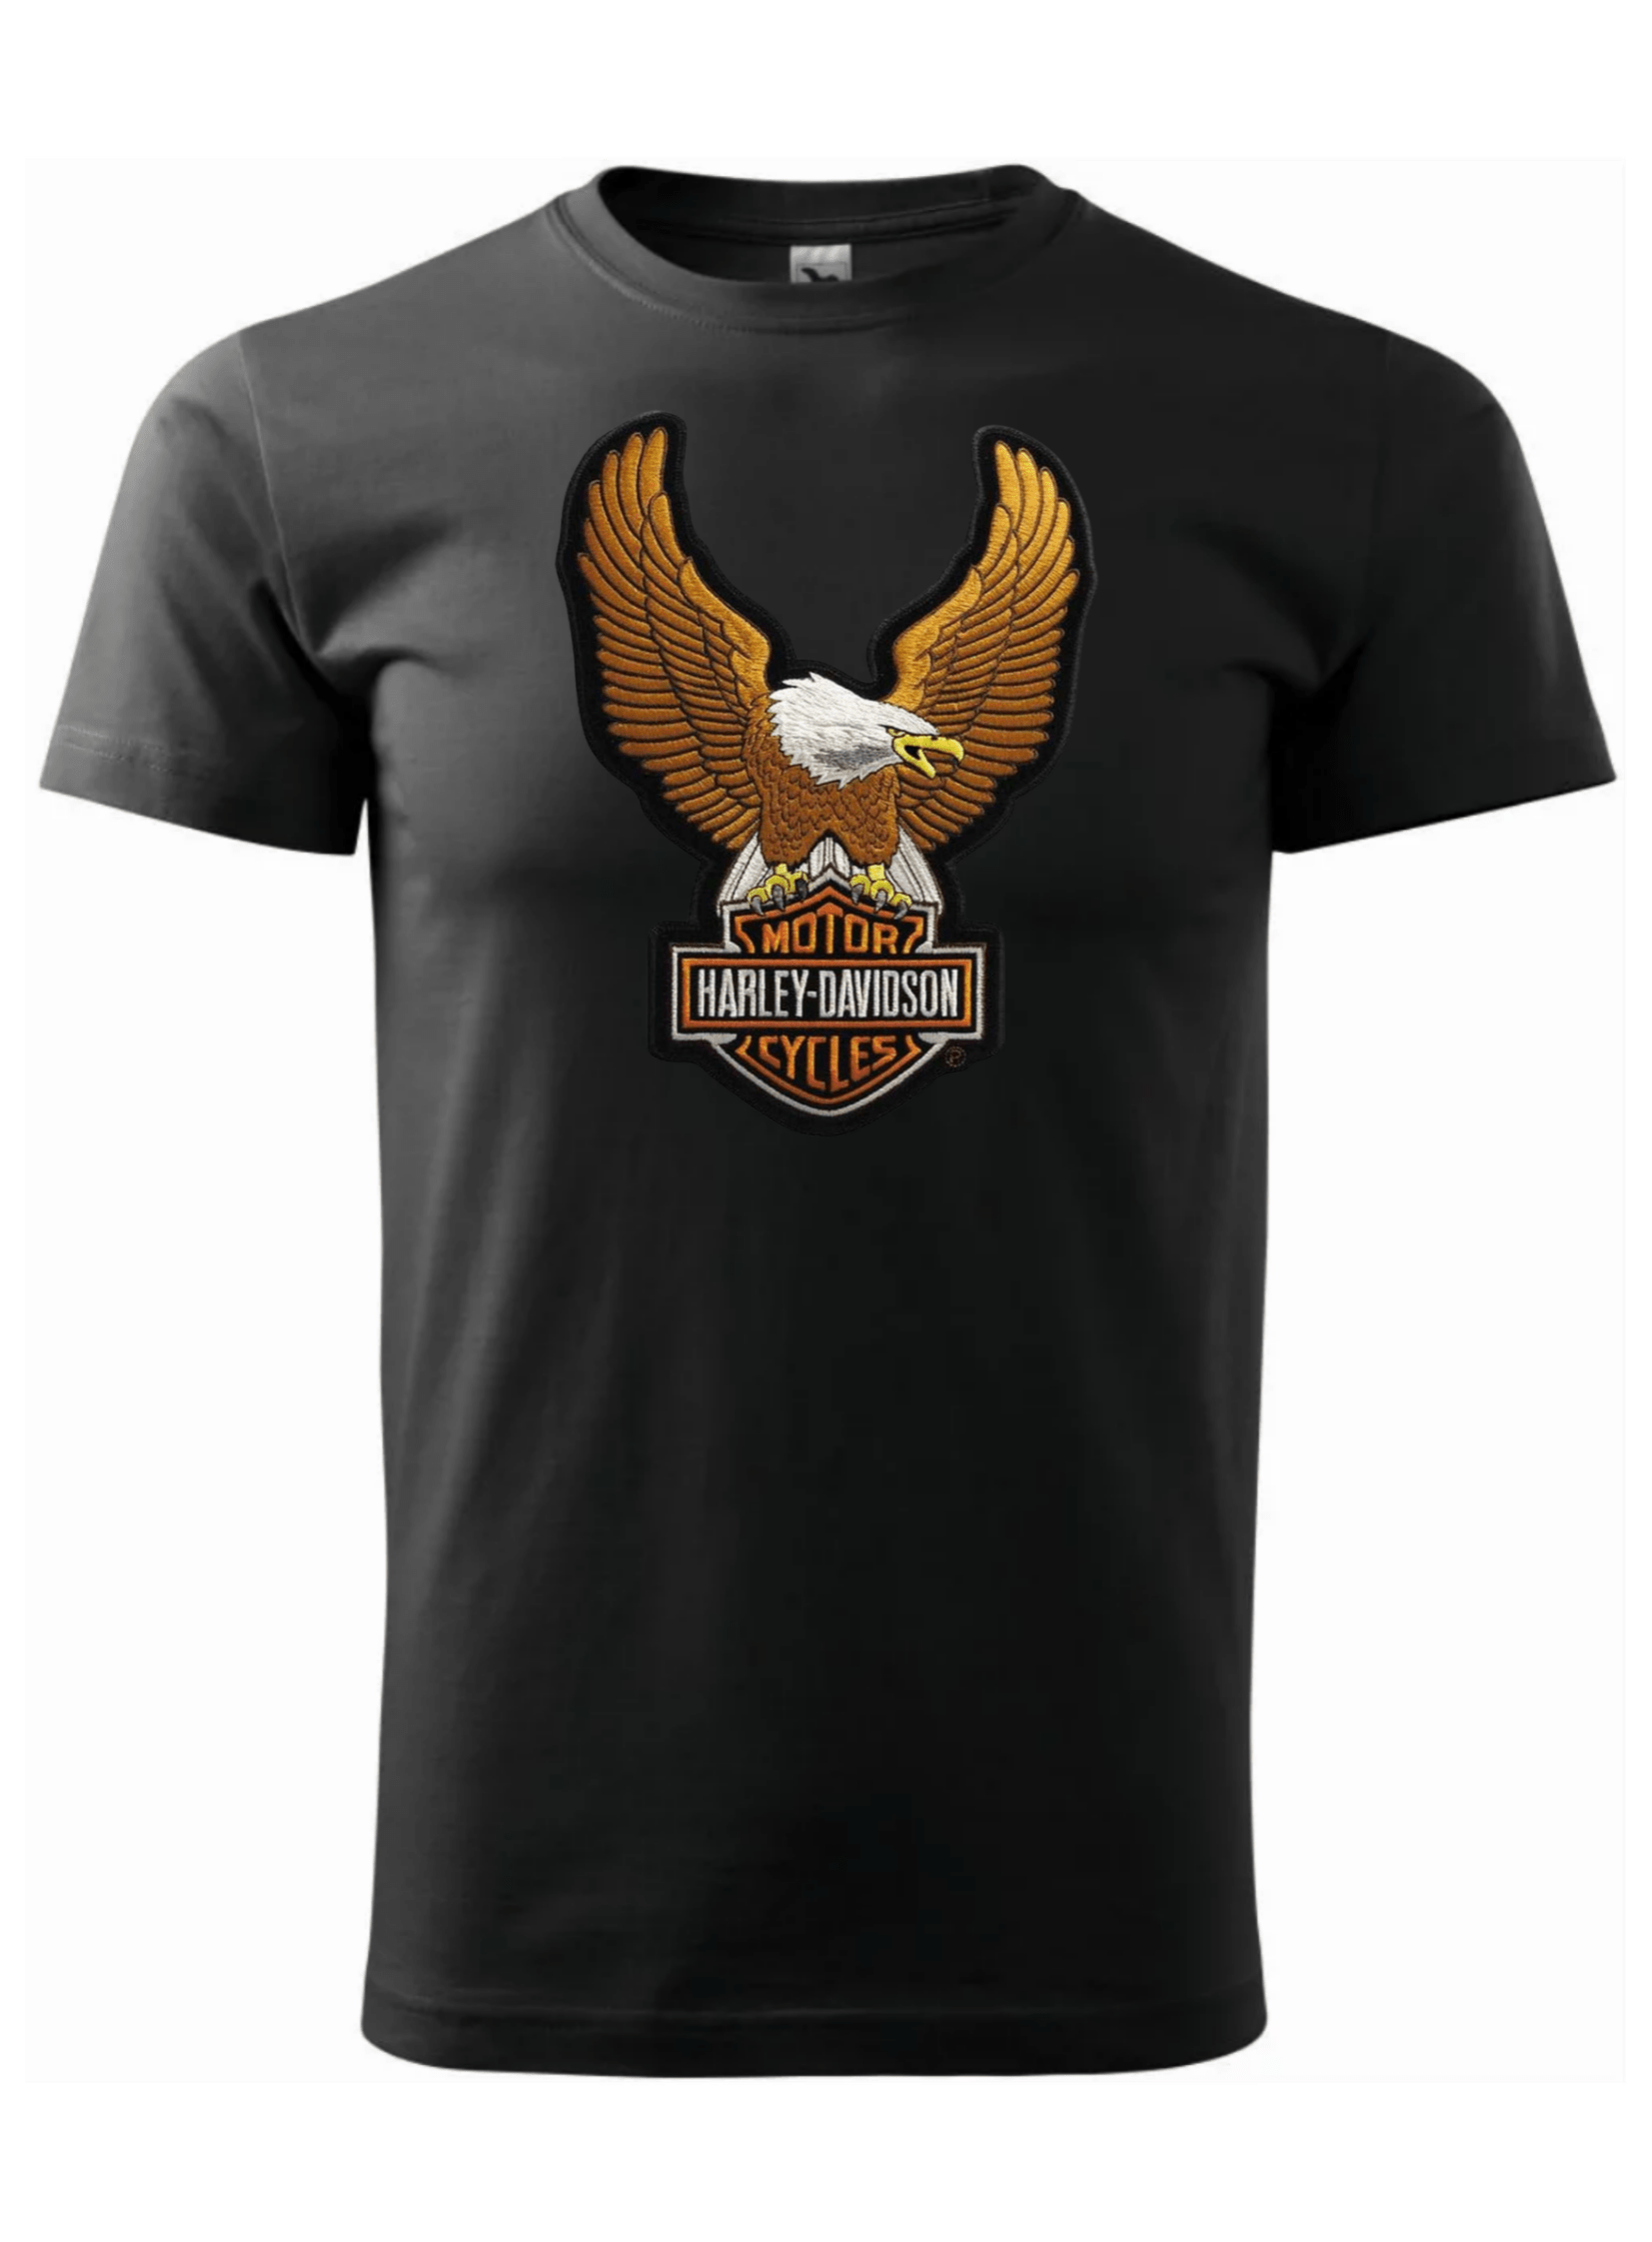 Pánské tričko s potiskem značky Harley Davidson 12